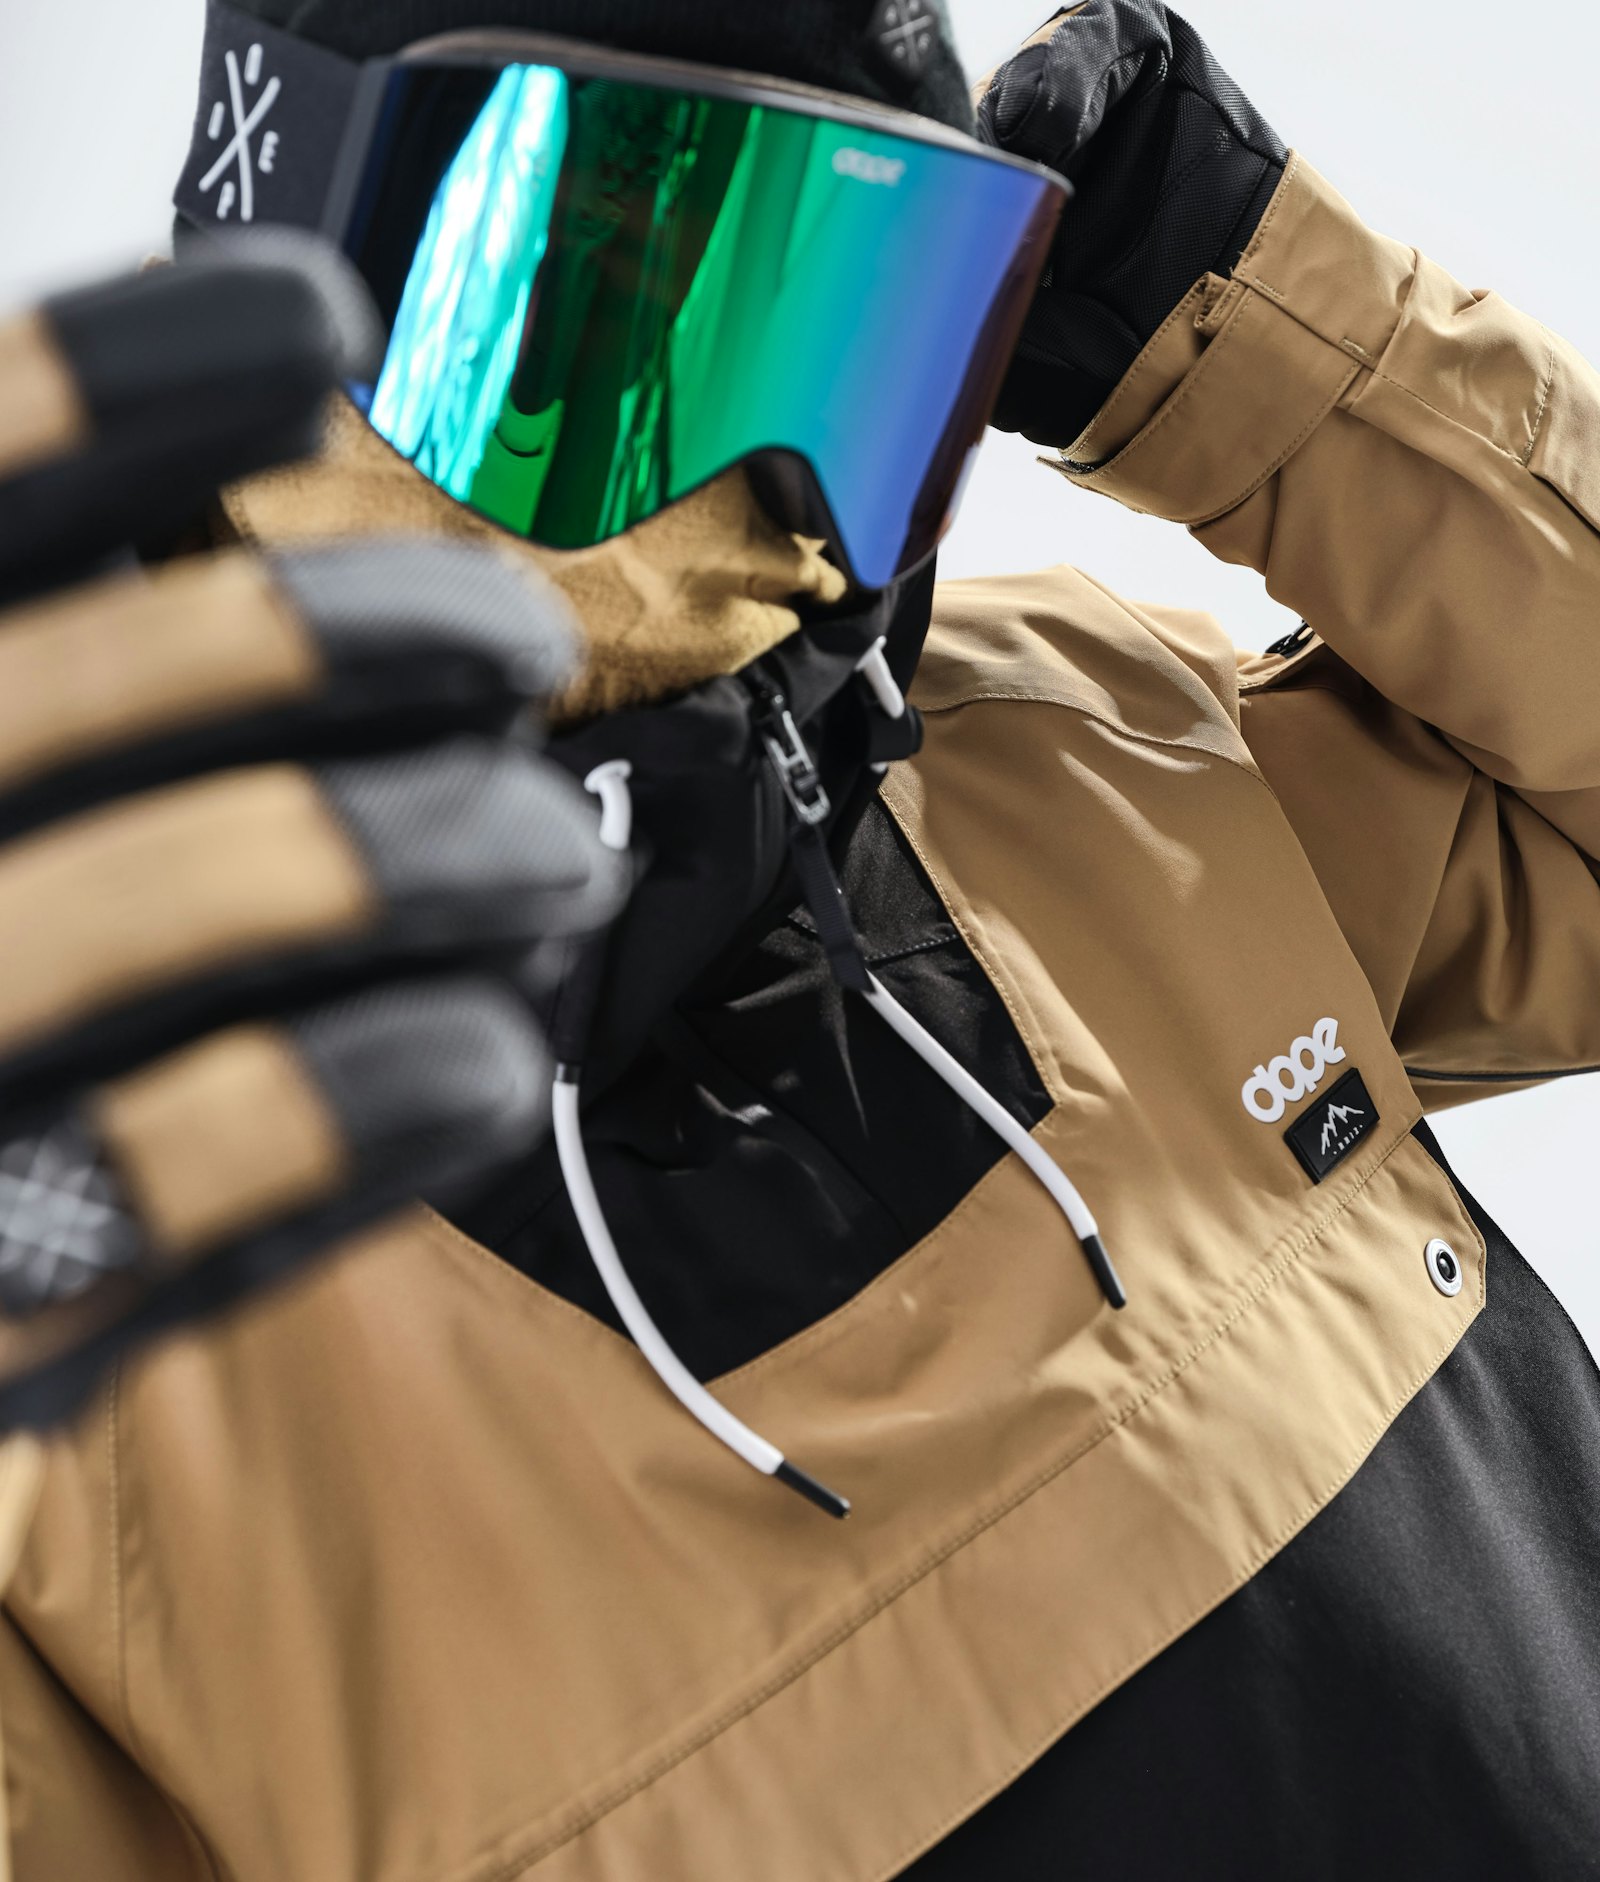 Annok 2020 Veste Snowboard Homme Gold/Black